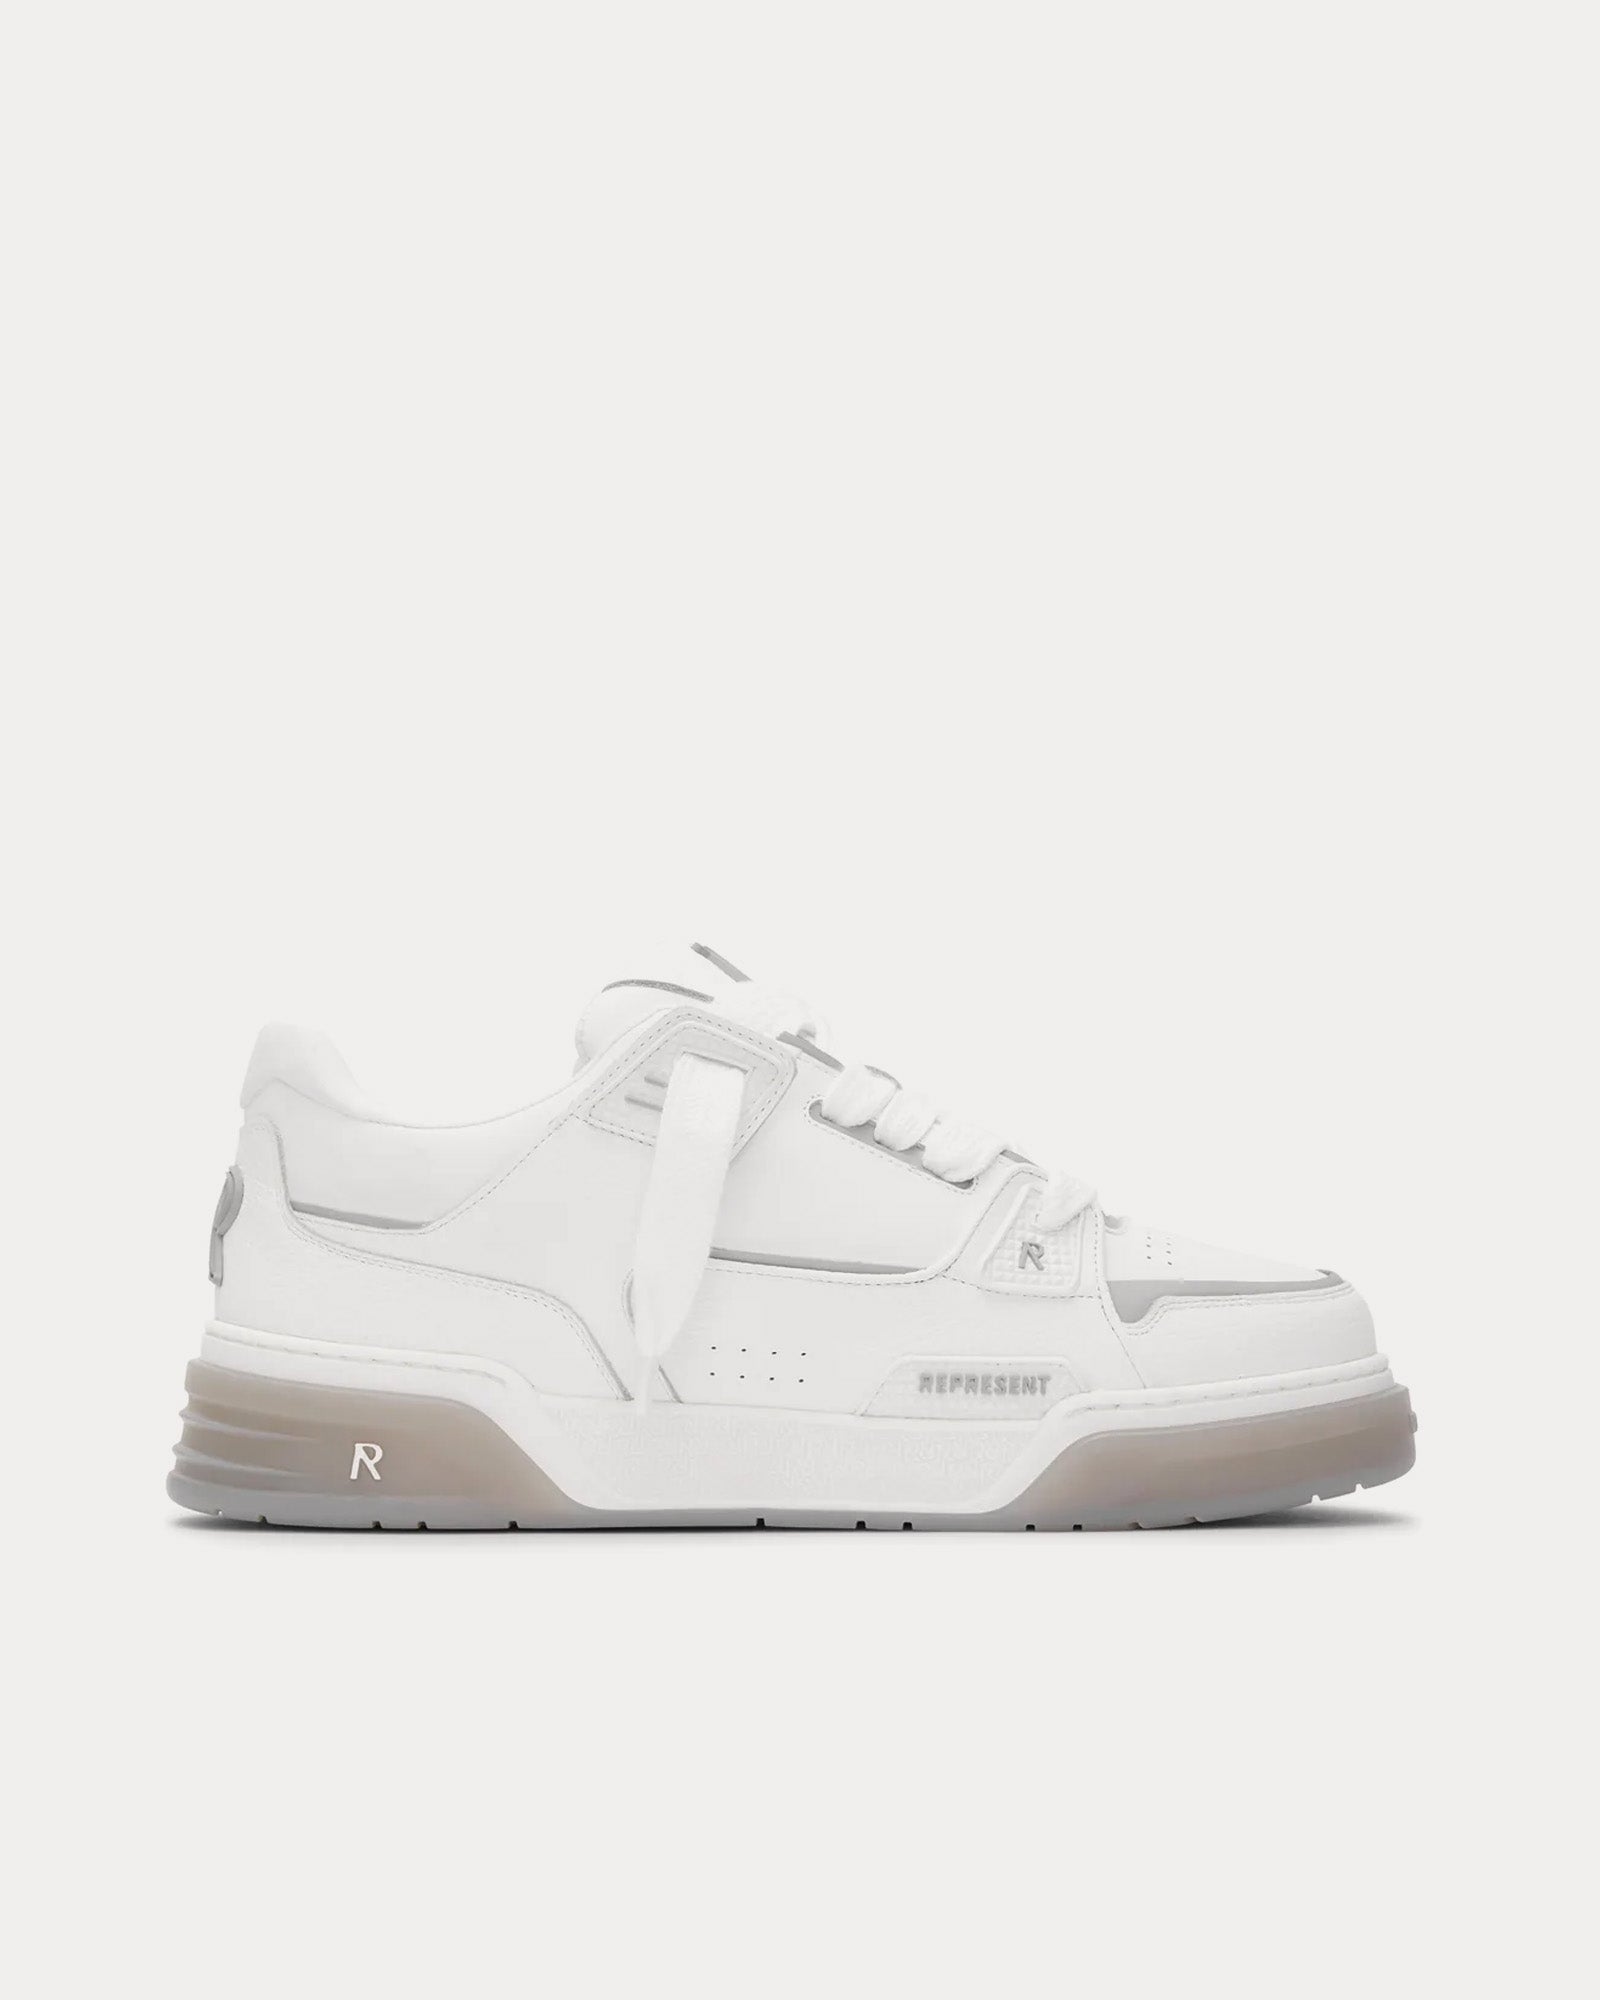 Represent - Studio Sneaker White / Grey Low Top Sneakers